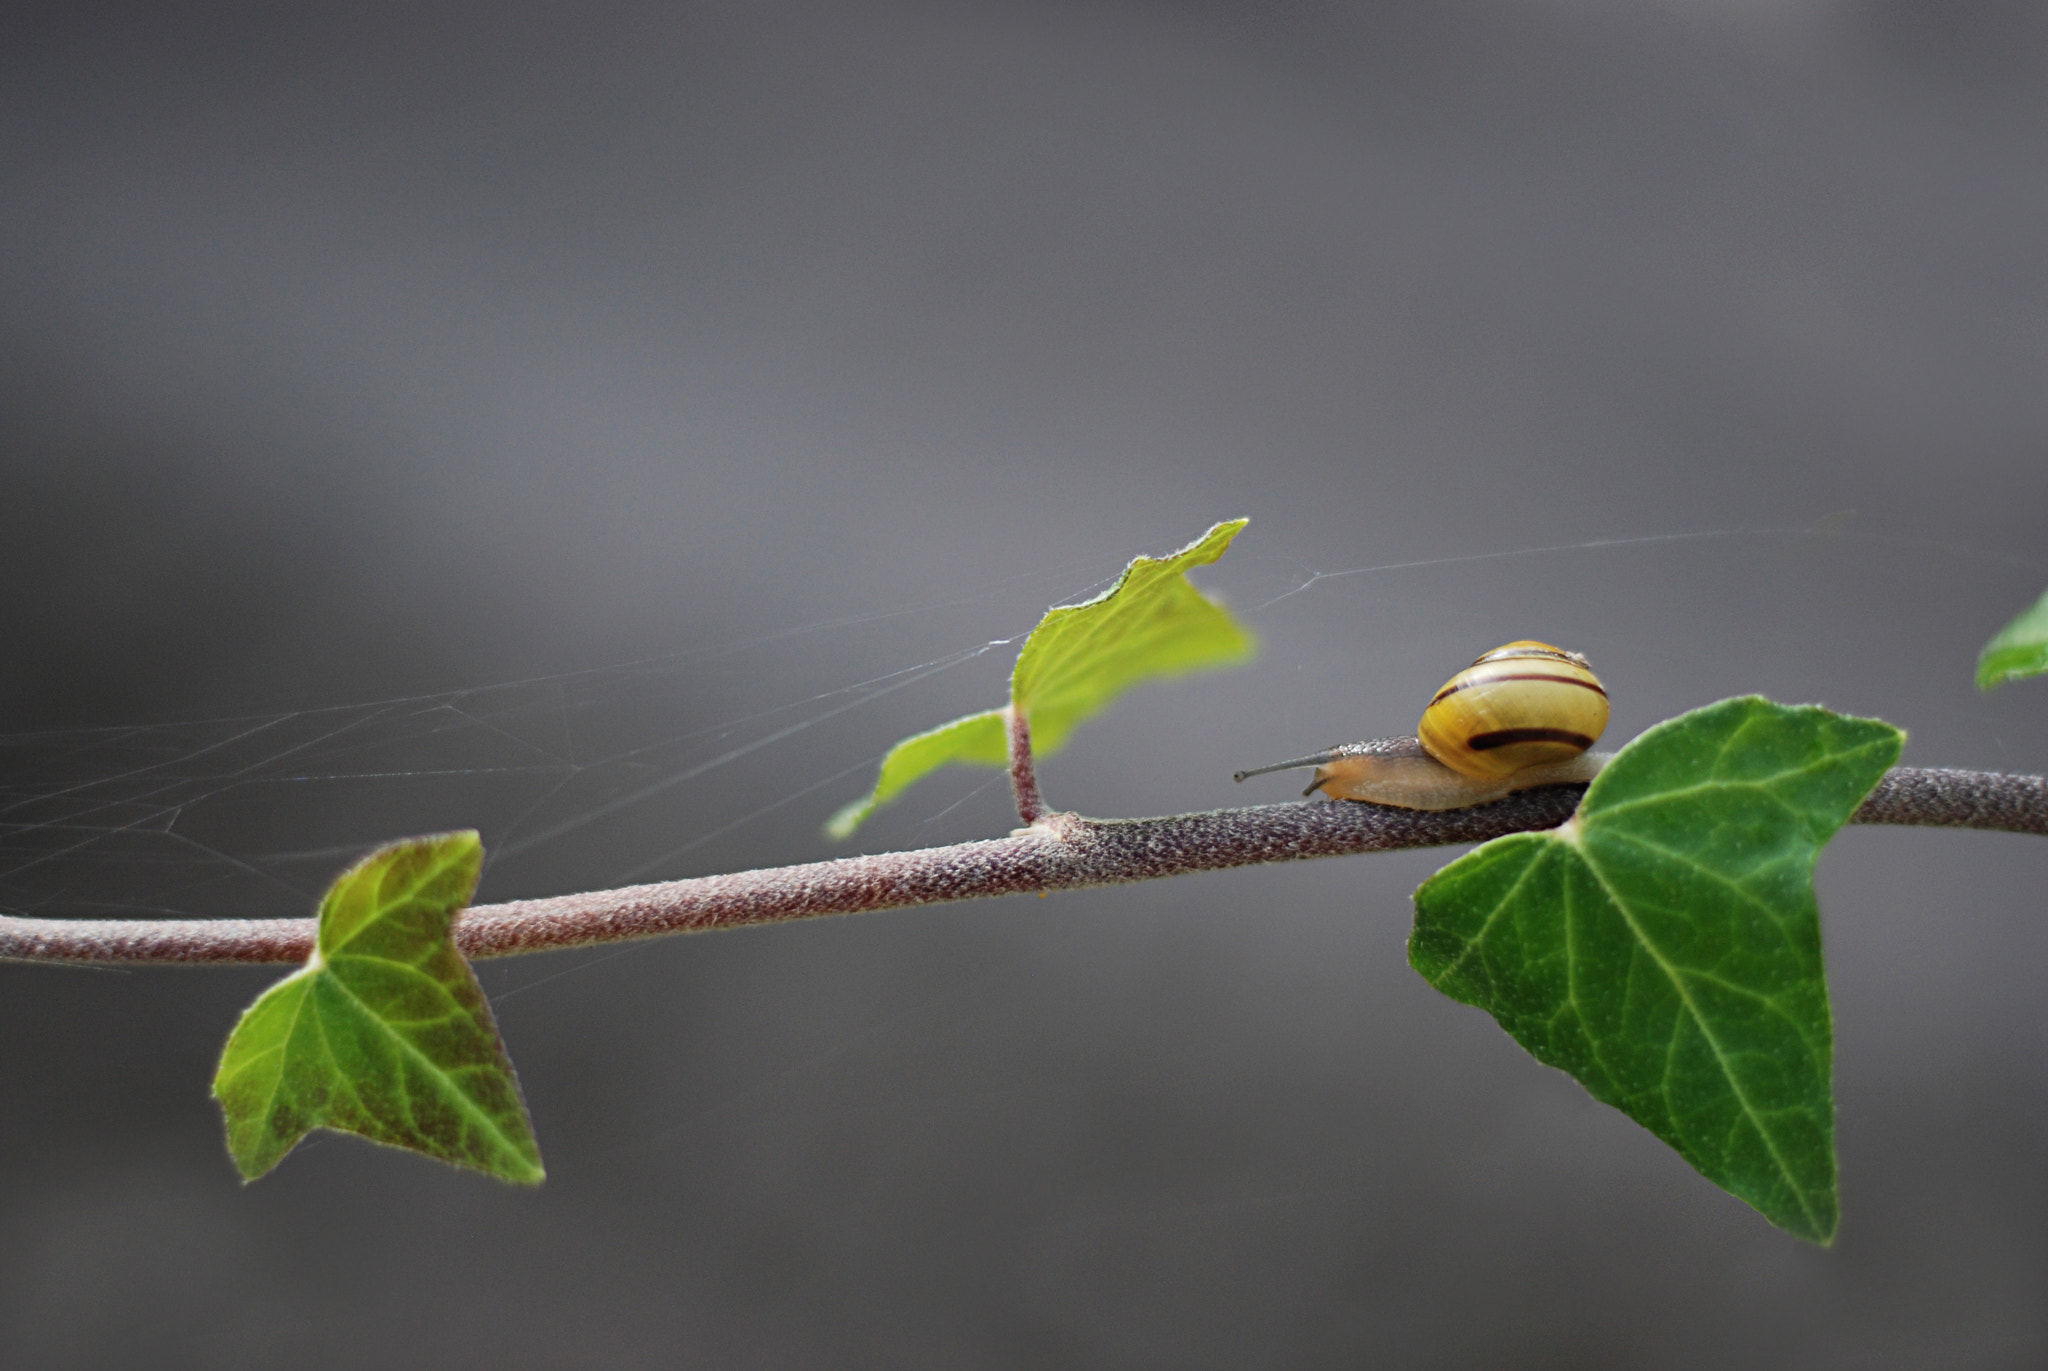 Balancing snail